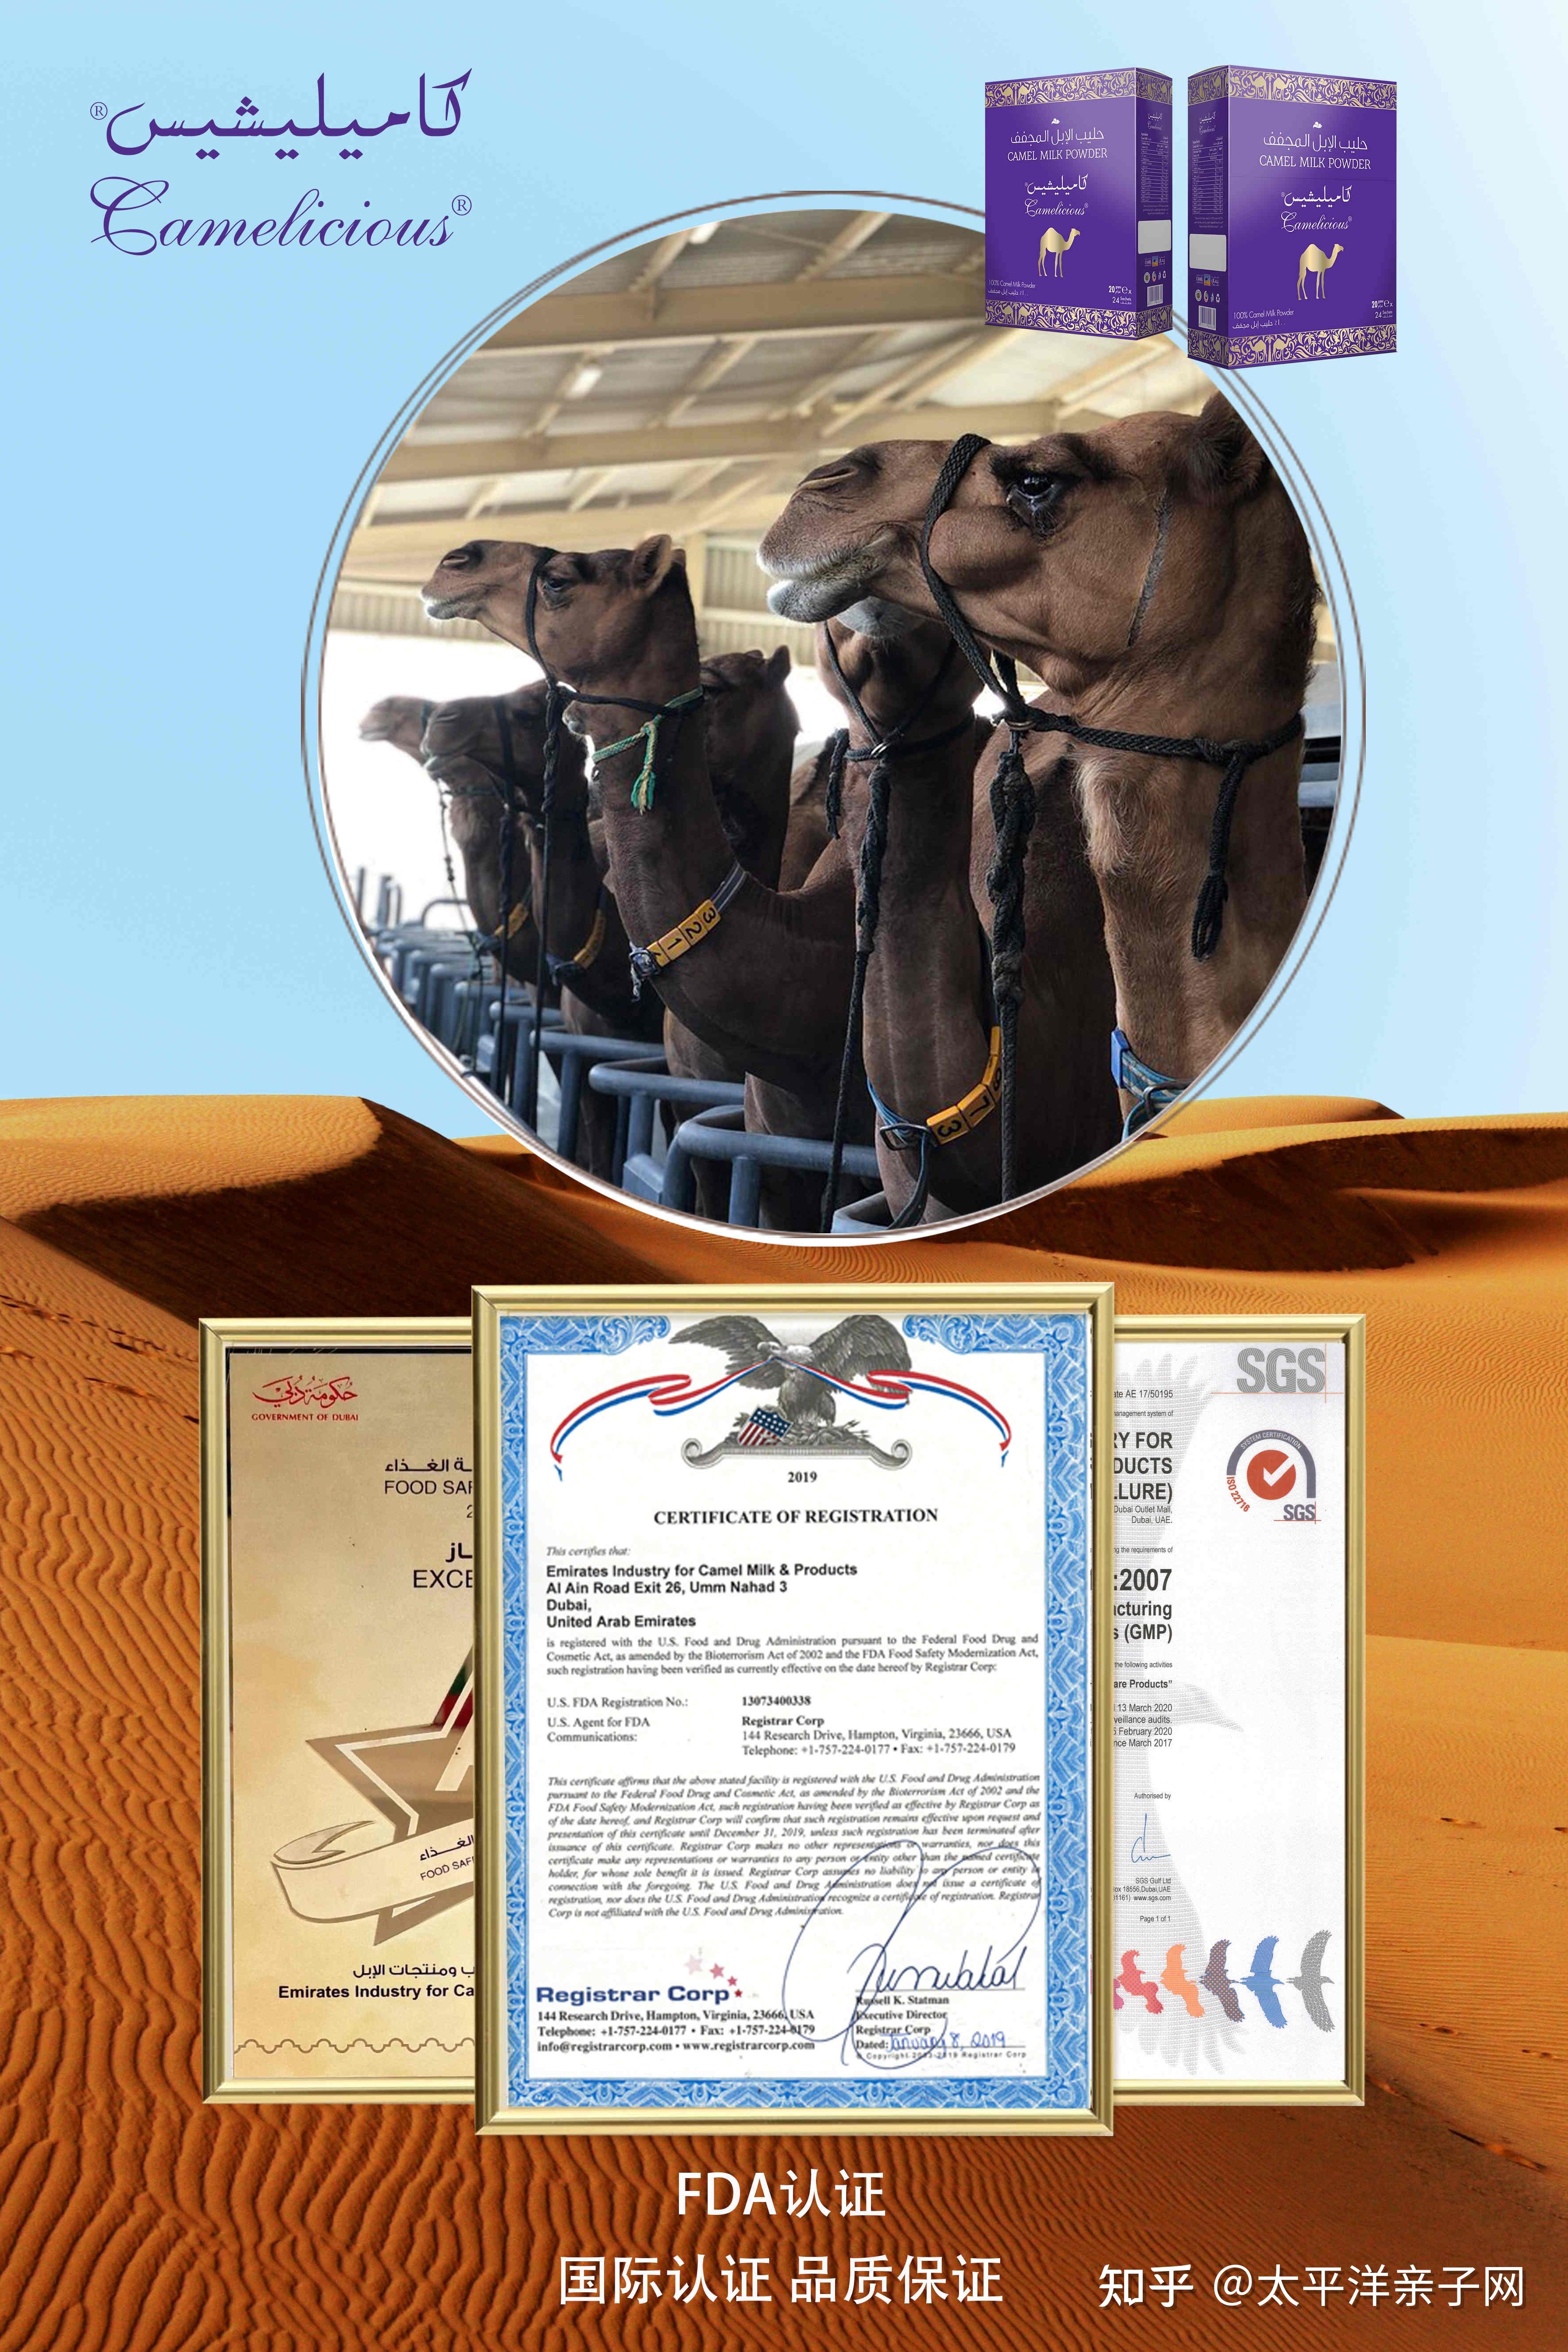 天猫618全球品牌动起来！荷兰奶山羊、迪拜皇家骆驼在加油“产奶” - 中国日报网